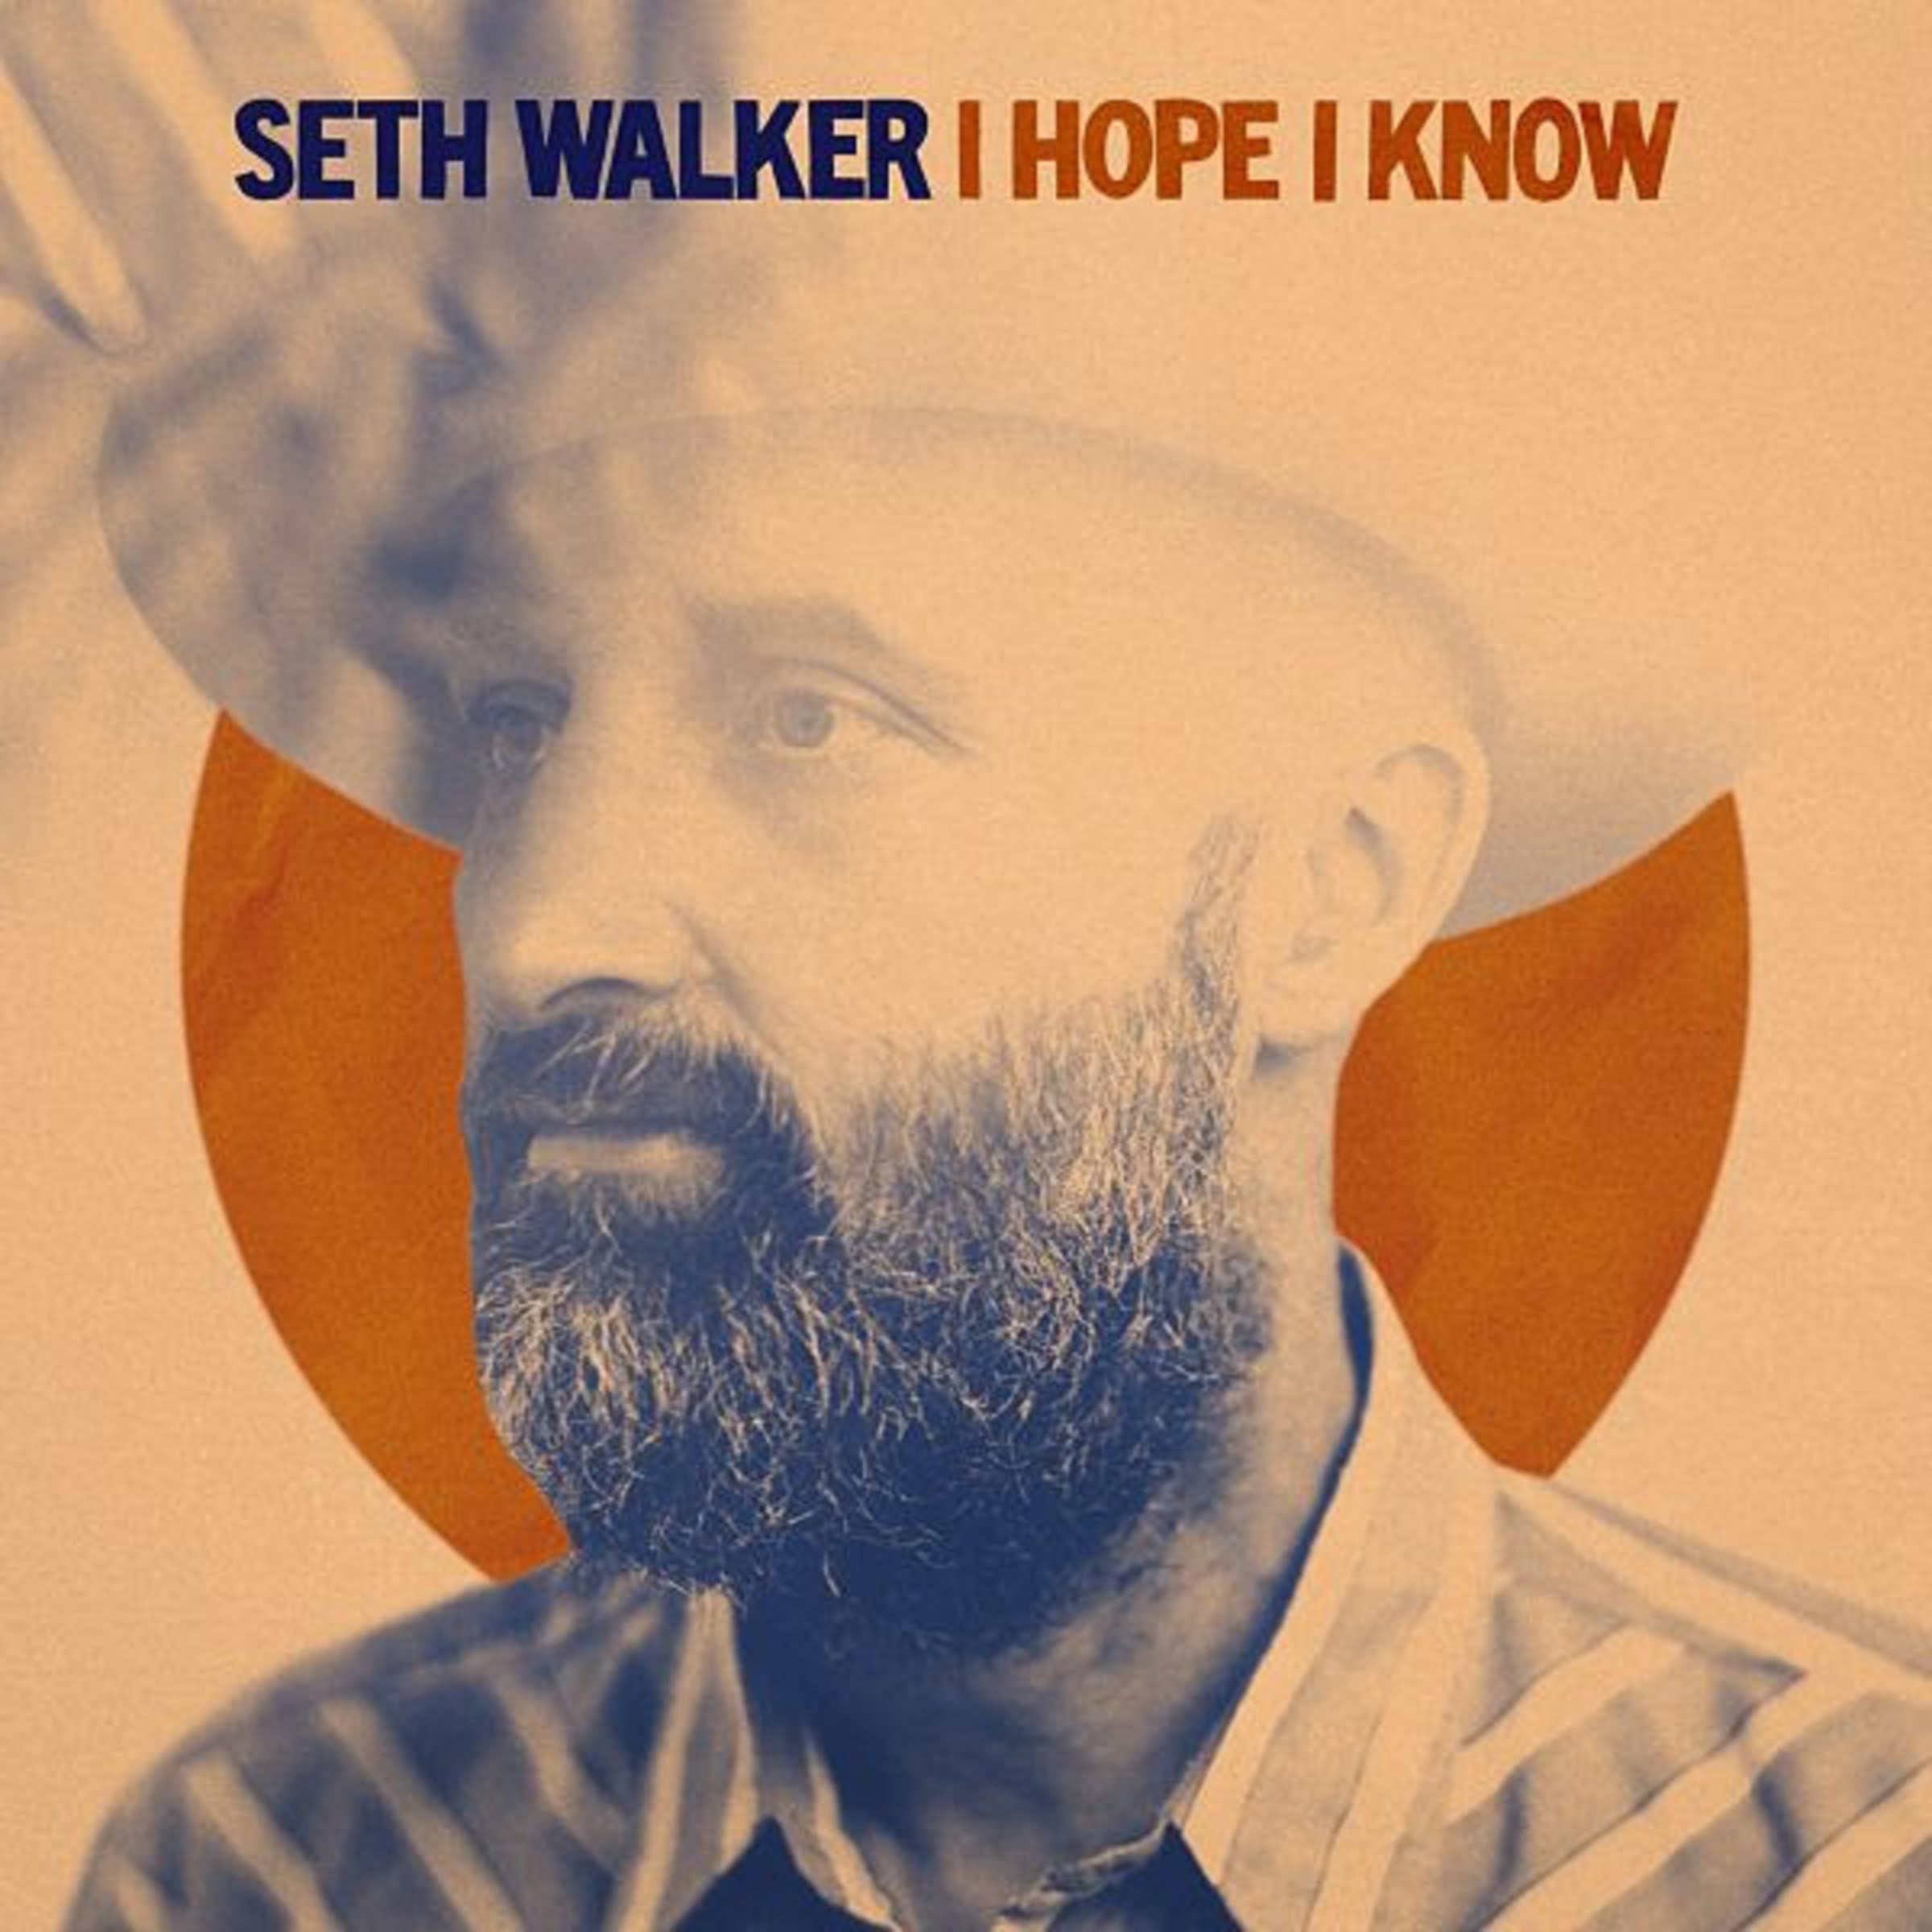 Seth Walker Announces New Album 'I Hope I Know' + U.S. Tour Dates